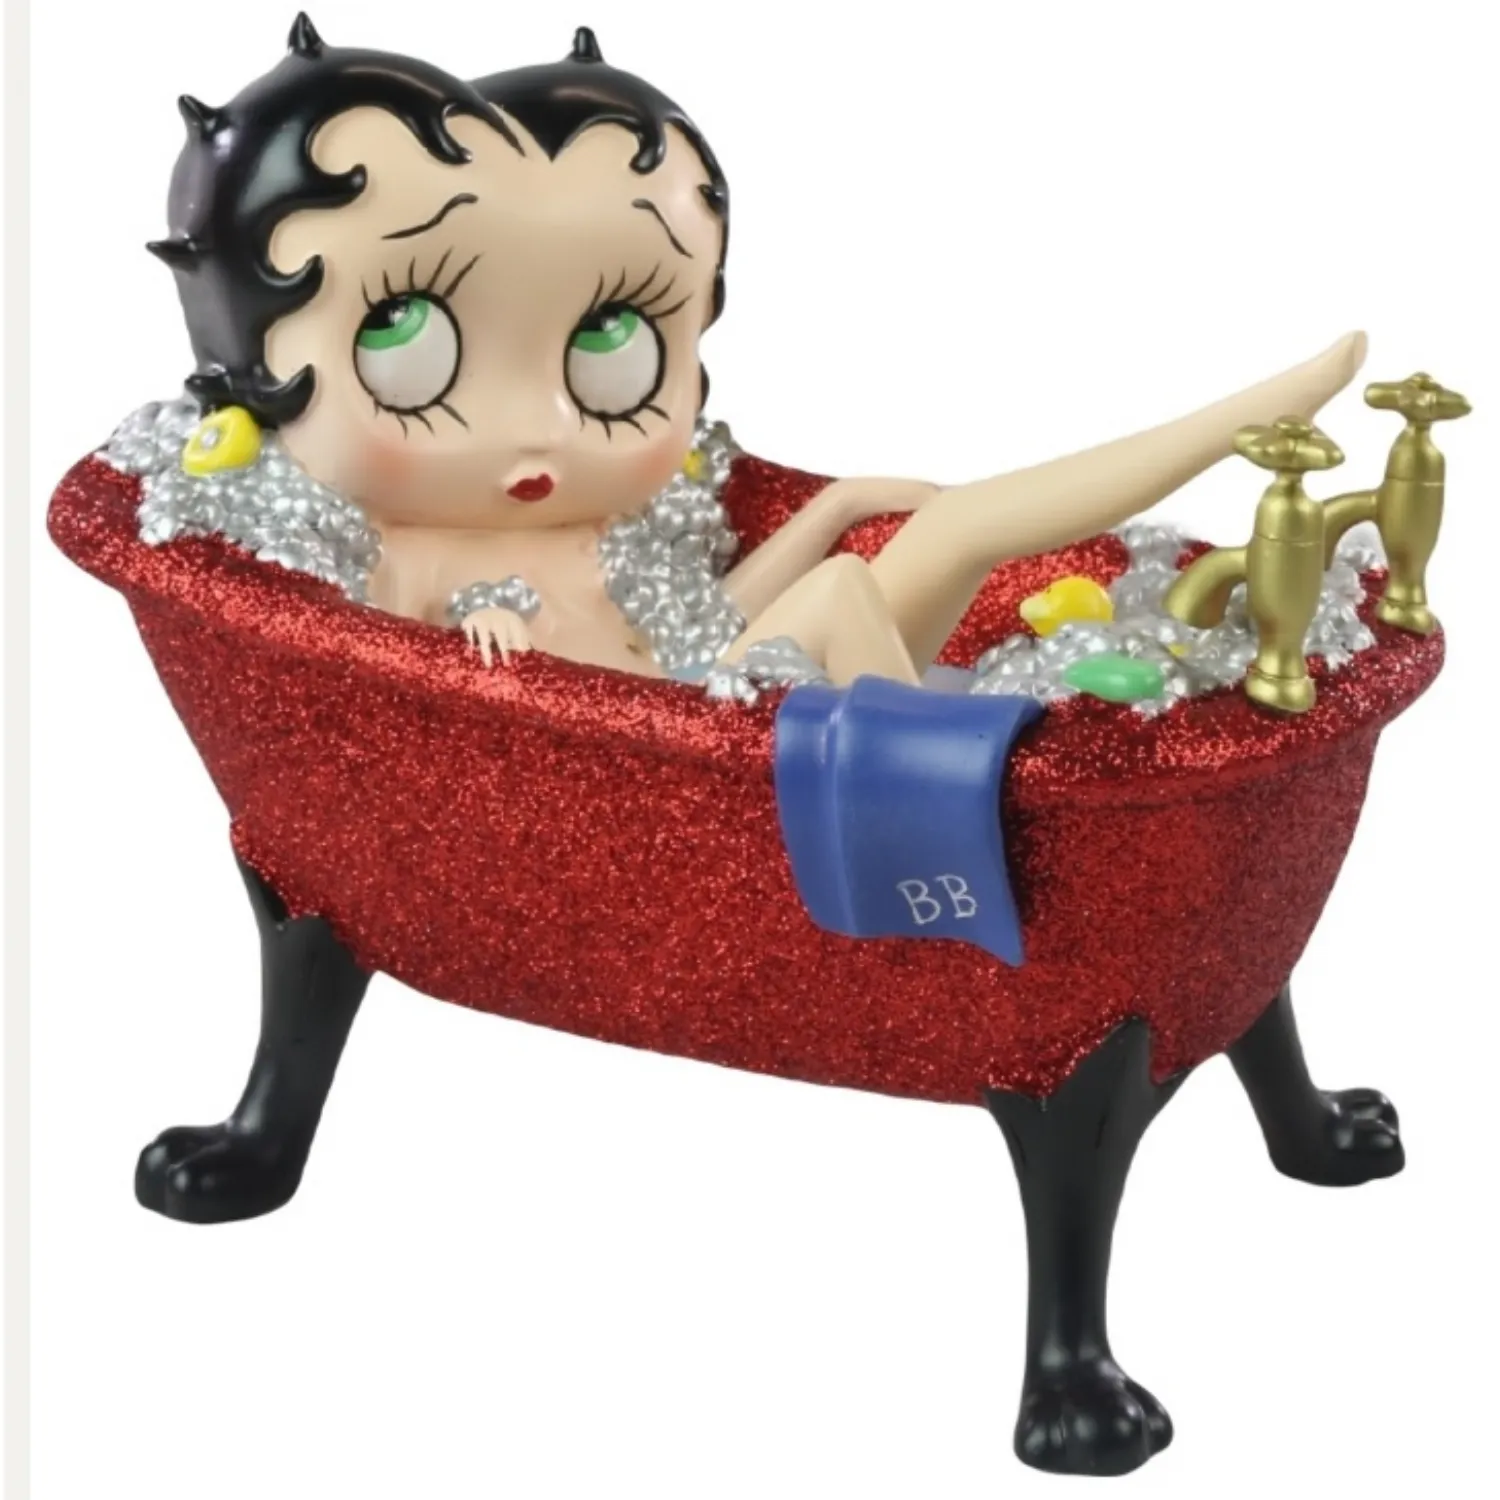 Betty Boop in Red Glitter Bath Tub